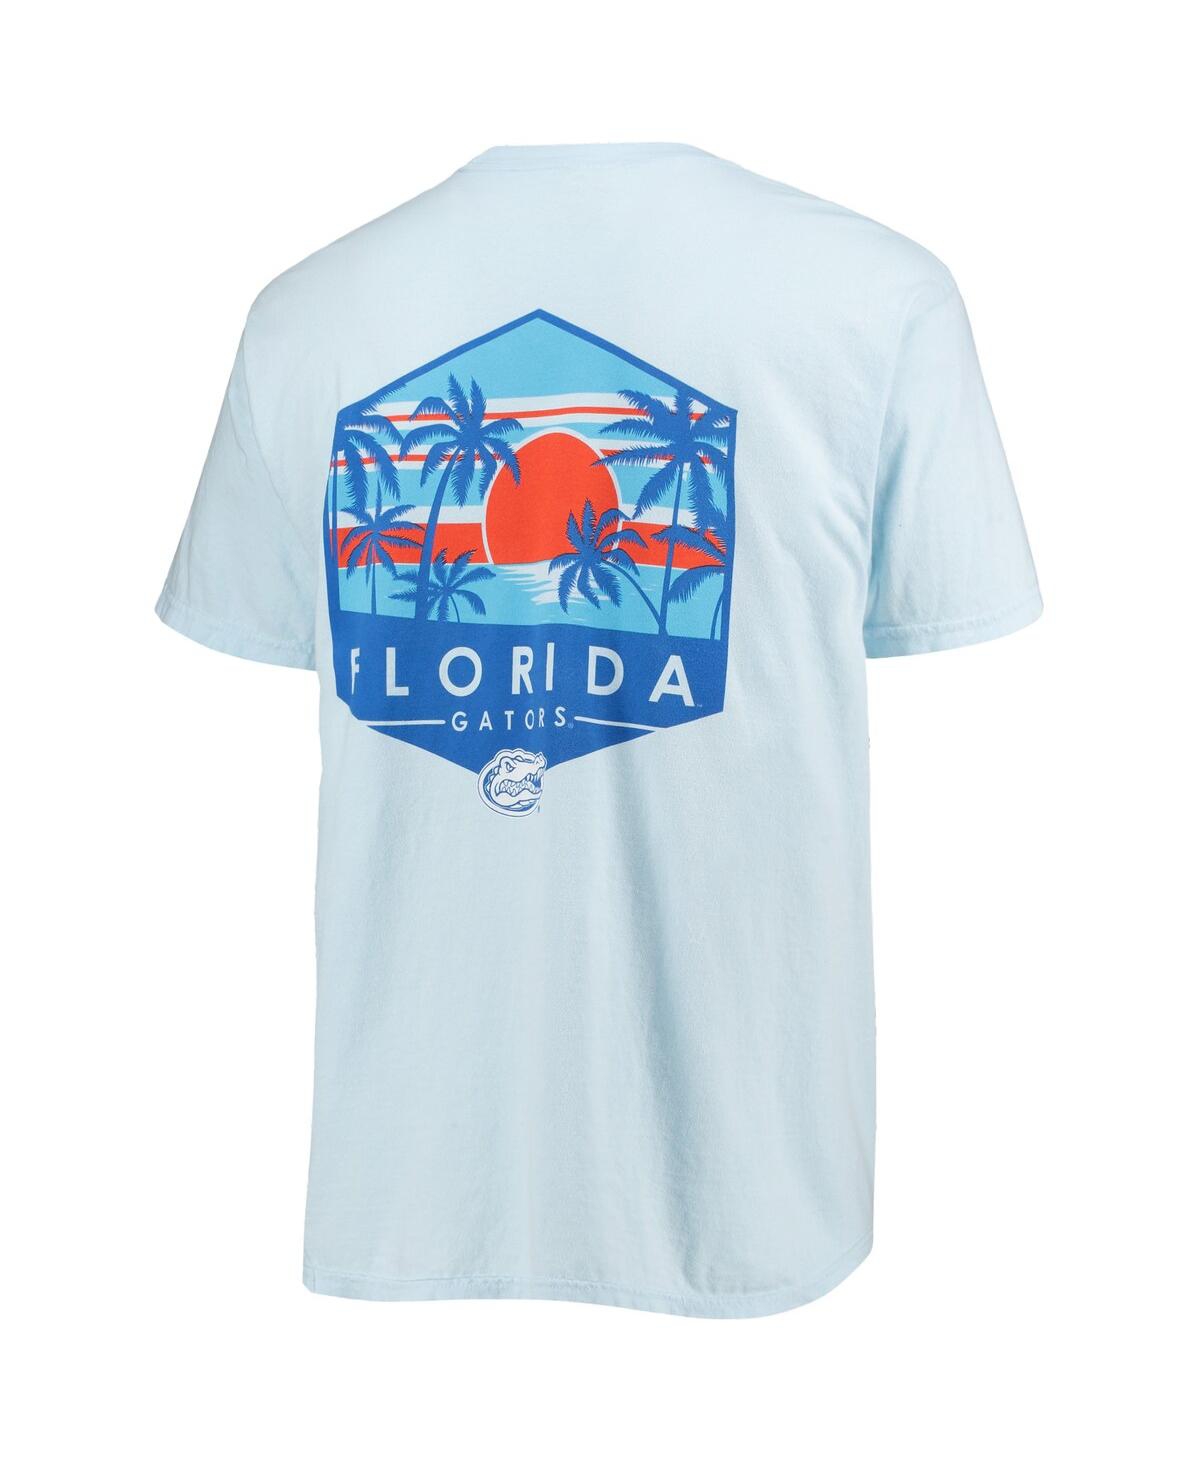 Shop Image One Men's Light Blue Florida Gators Landscape Shield Comfort Colors T-shirt